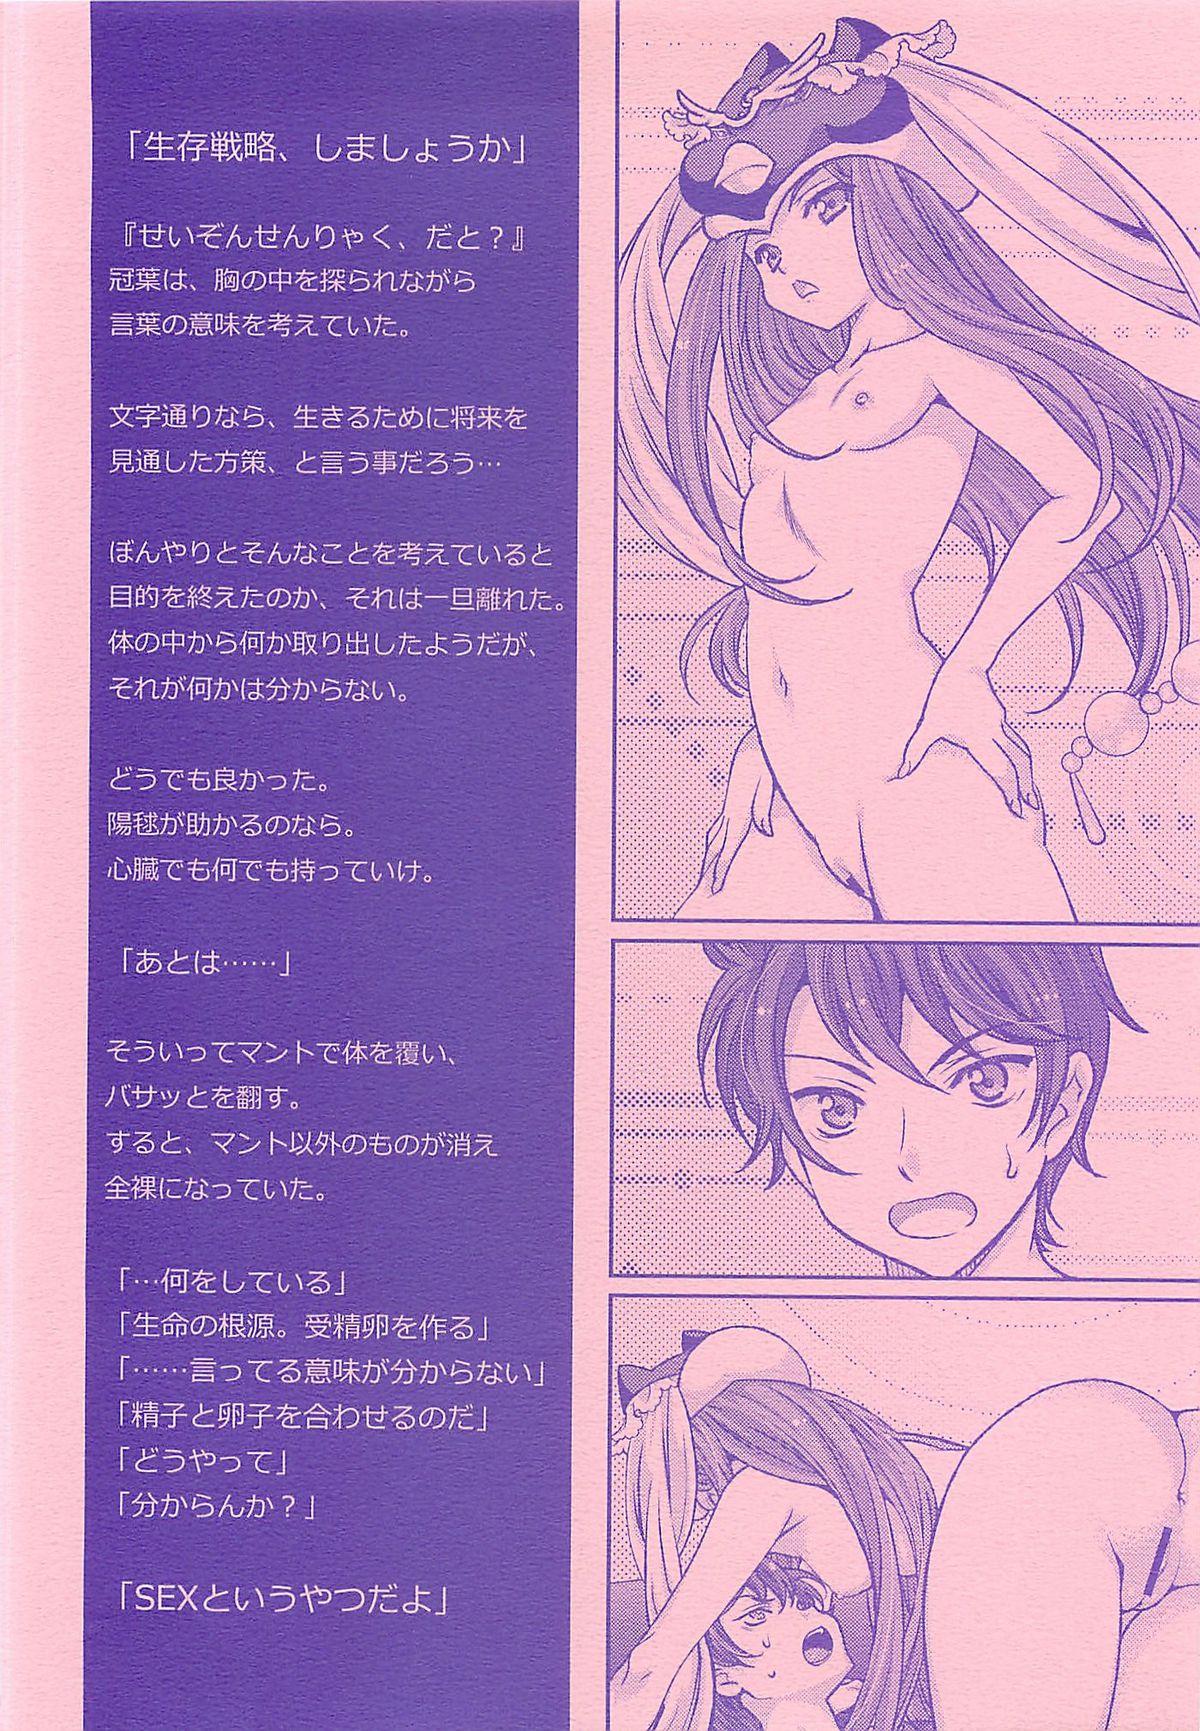 Oral Sex Seizon Senryaku no Tashinamikata - Mawaru penguindrum Mum - Page 3